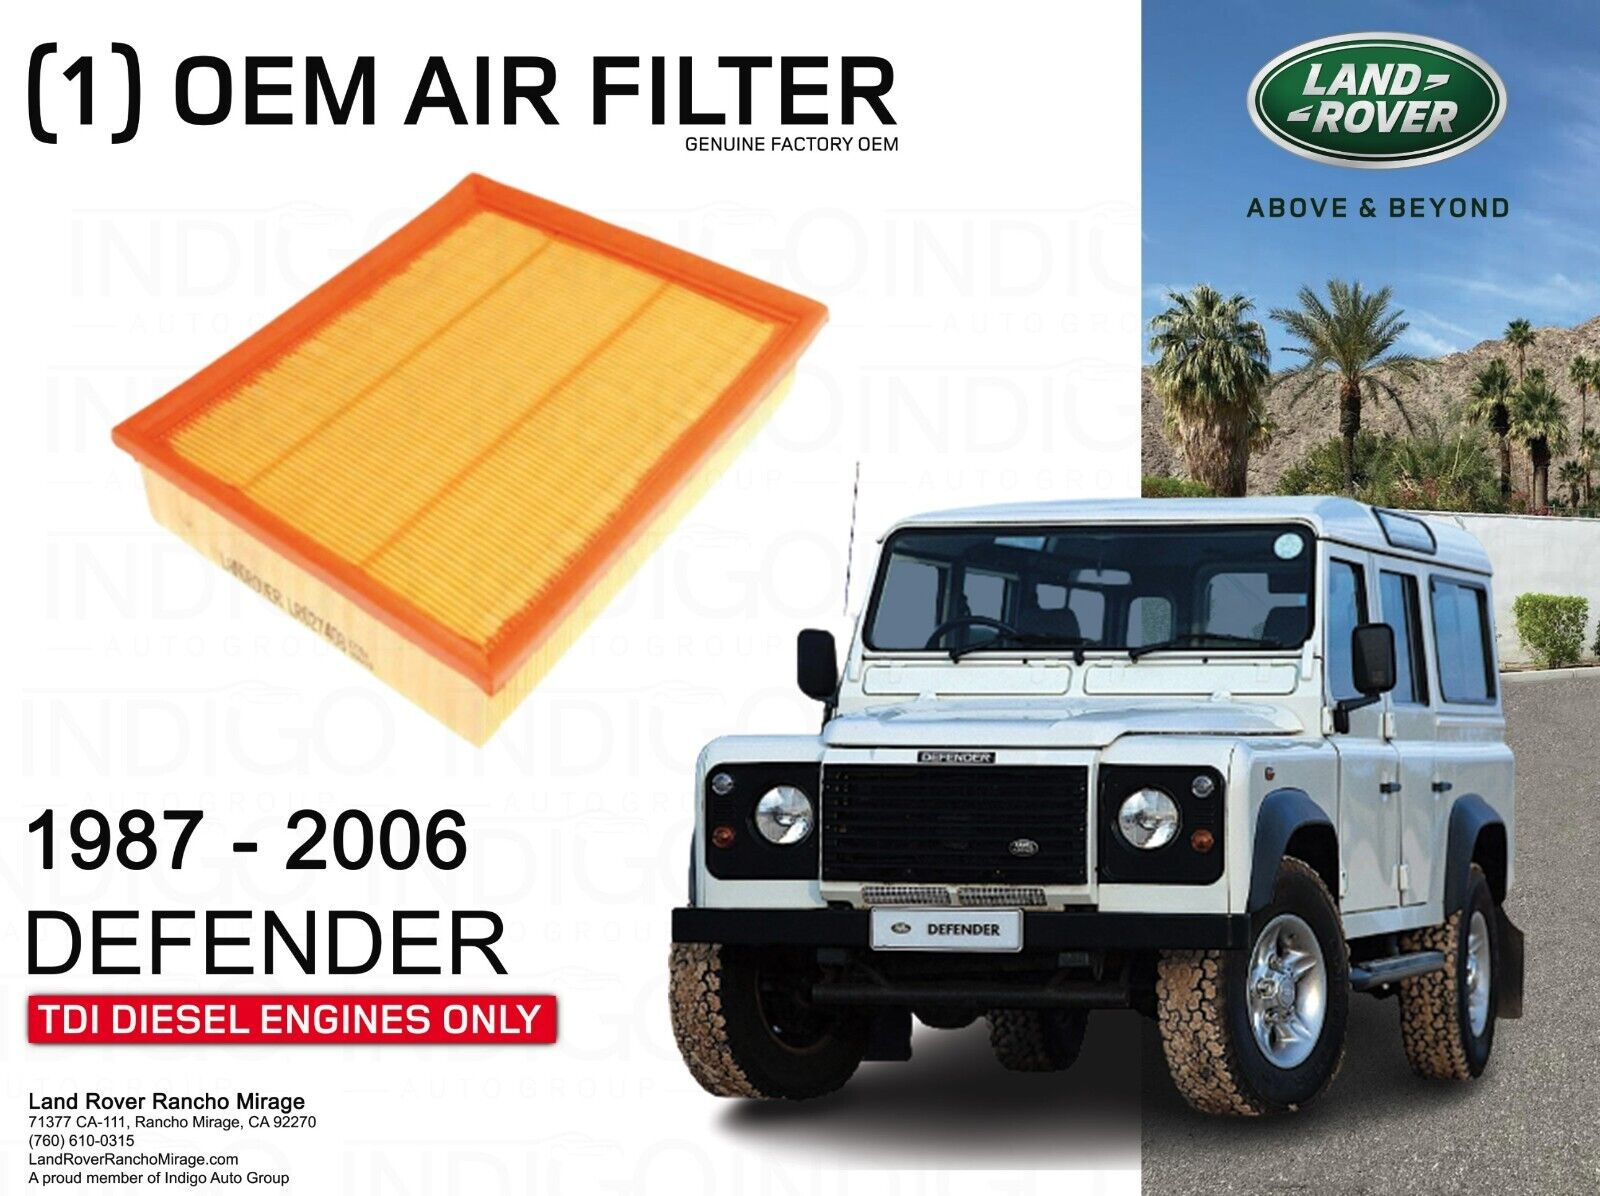 LAND ROVER AIR FILTER 1987-2006 DEFENDER DIESEL-LR027408 GENUINE FACTORY OEM